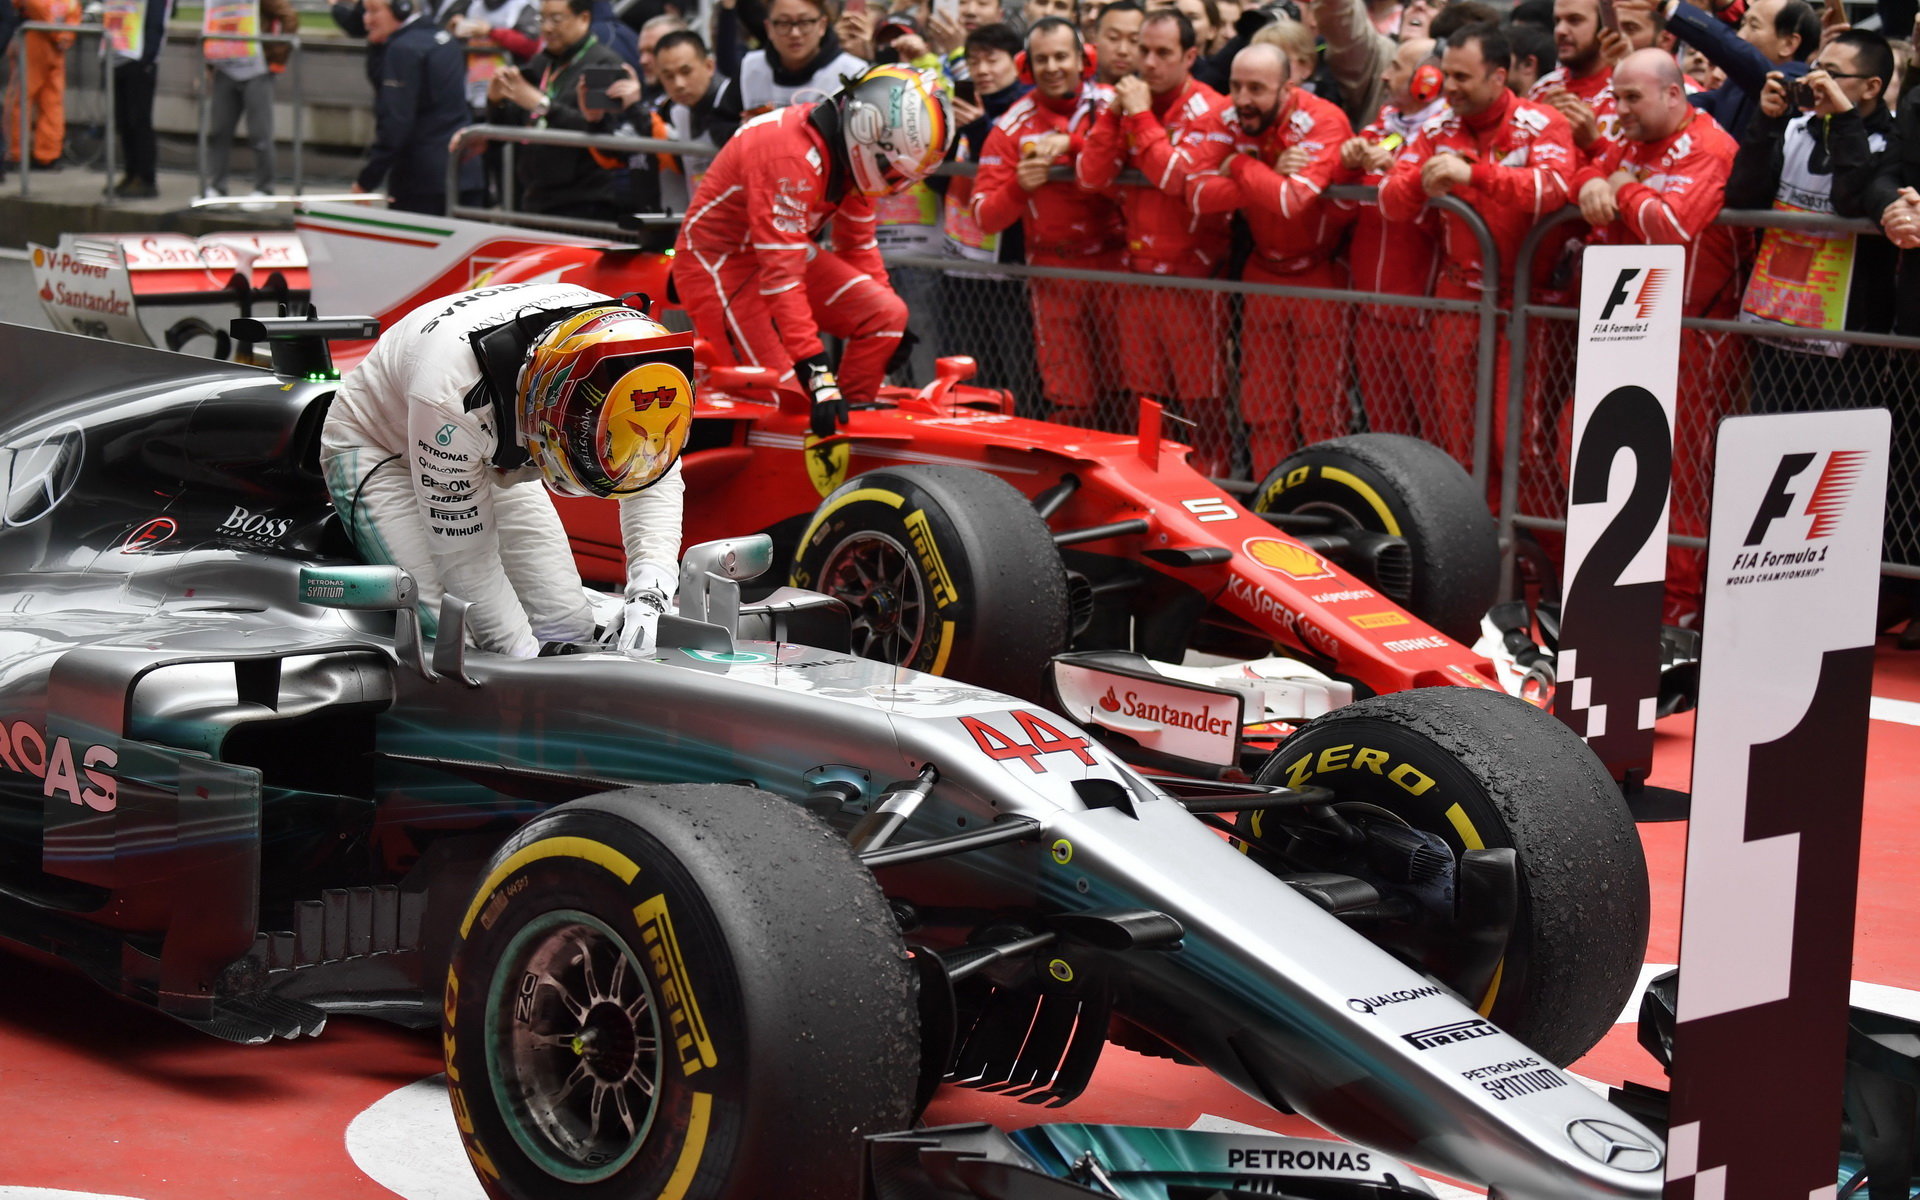 "Lewis si zasloužil vyhrát," uznává Vettel